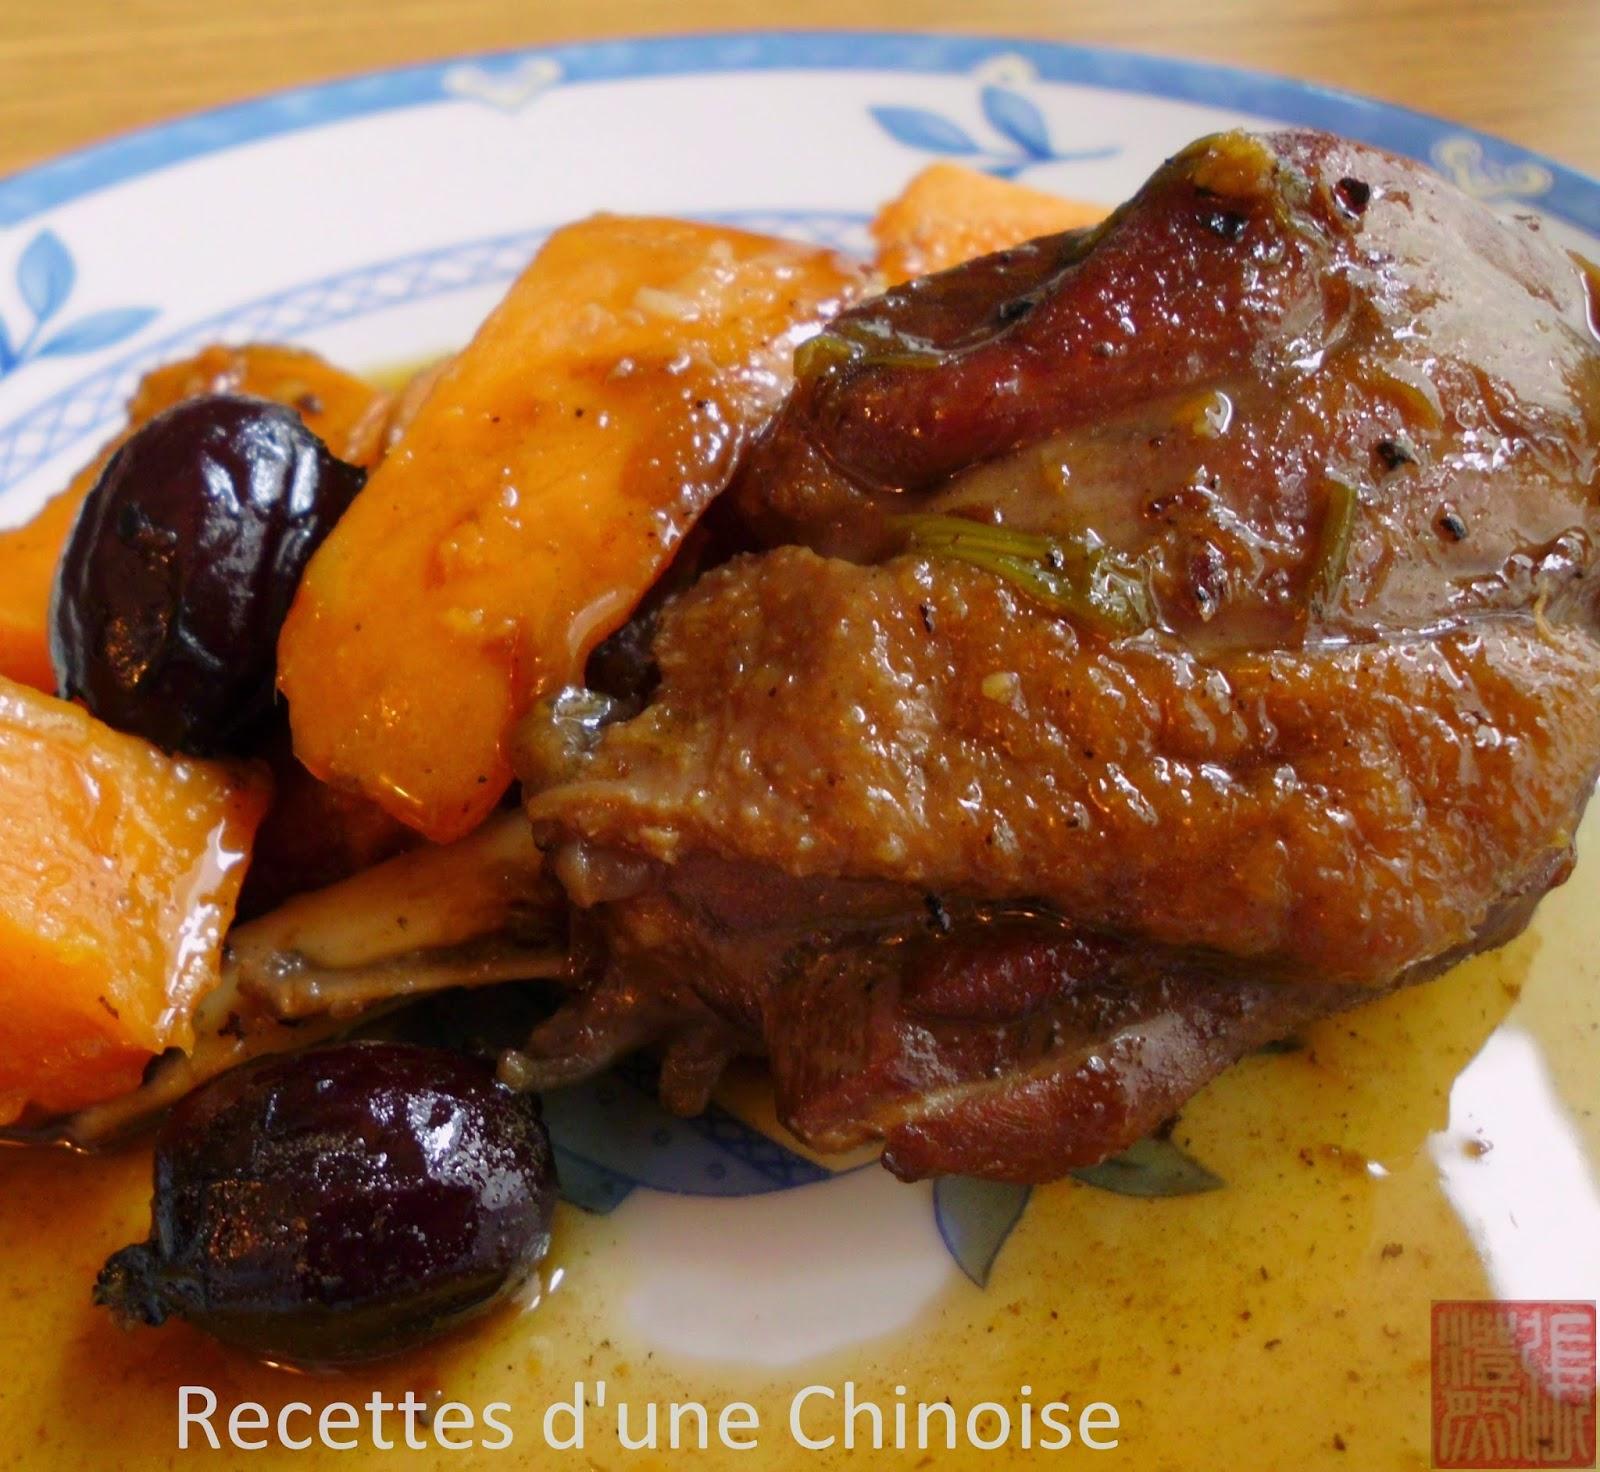 Cuisses de canard mijotées avec patate douce et jujube 红薯花雕鸭 hóngshǔ huādiāo yā